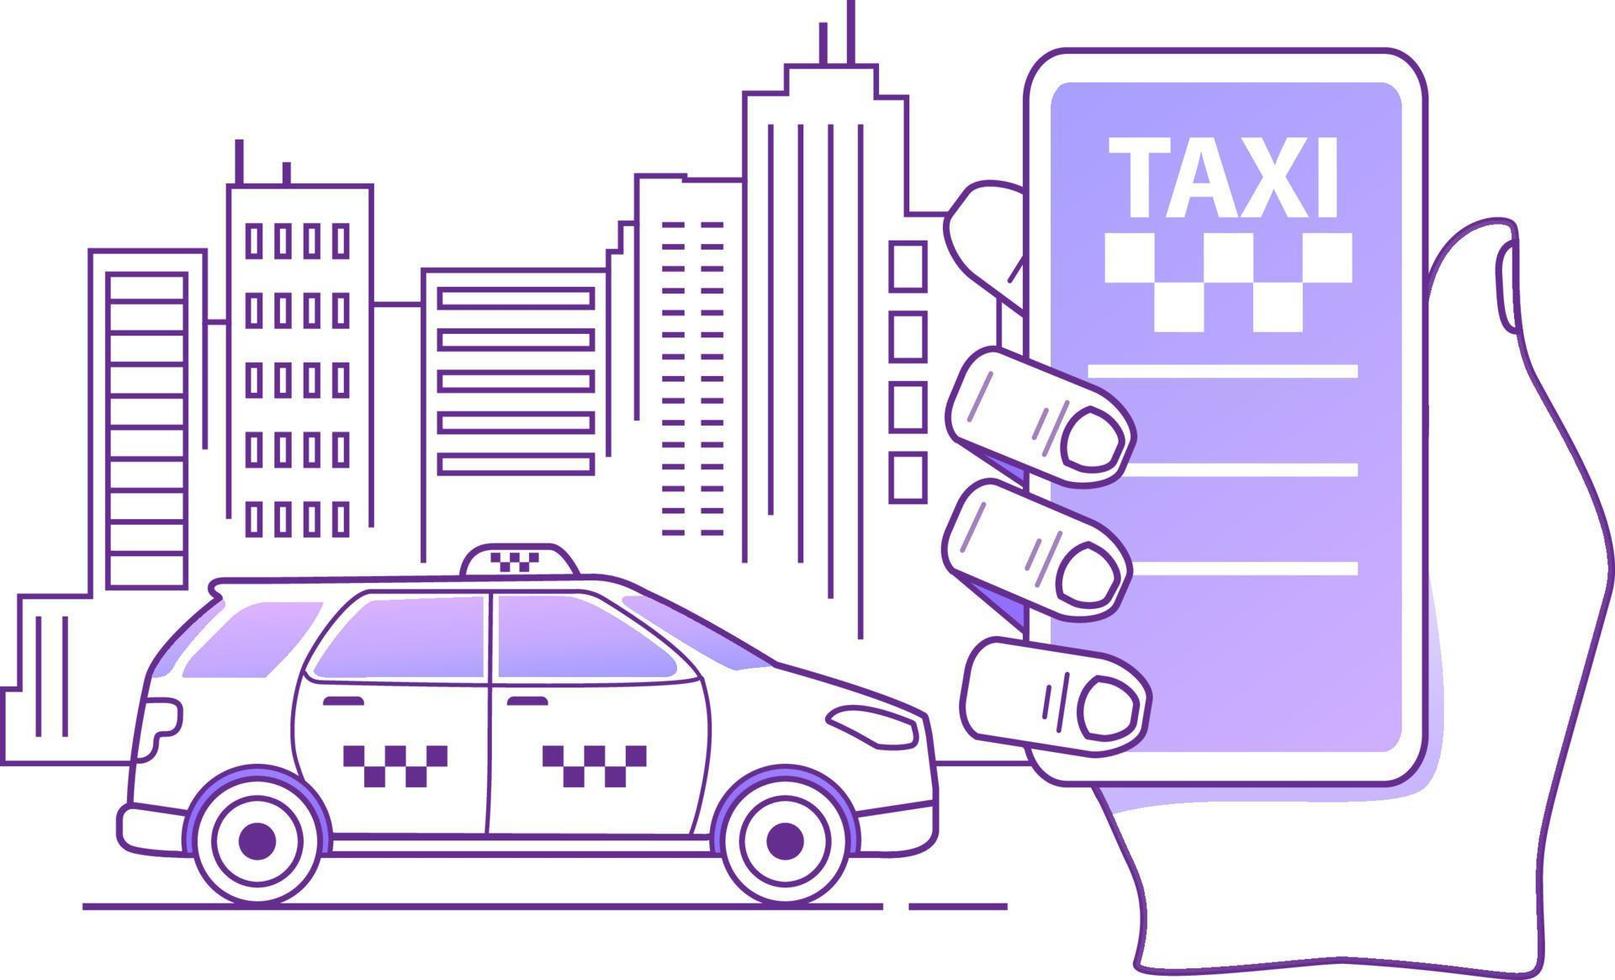 concetto di applicazione mobile per ordine di servizio taxi online. mano che tiene app per smartphone. silhouette della città con grattacieli. vettore di illustrazione del profilo piatto.